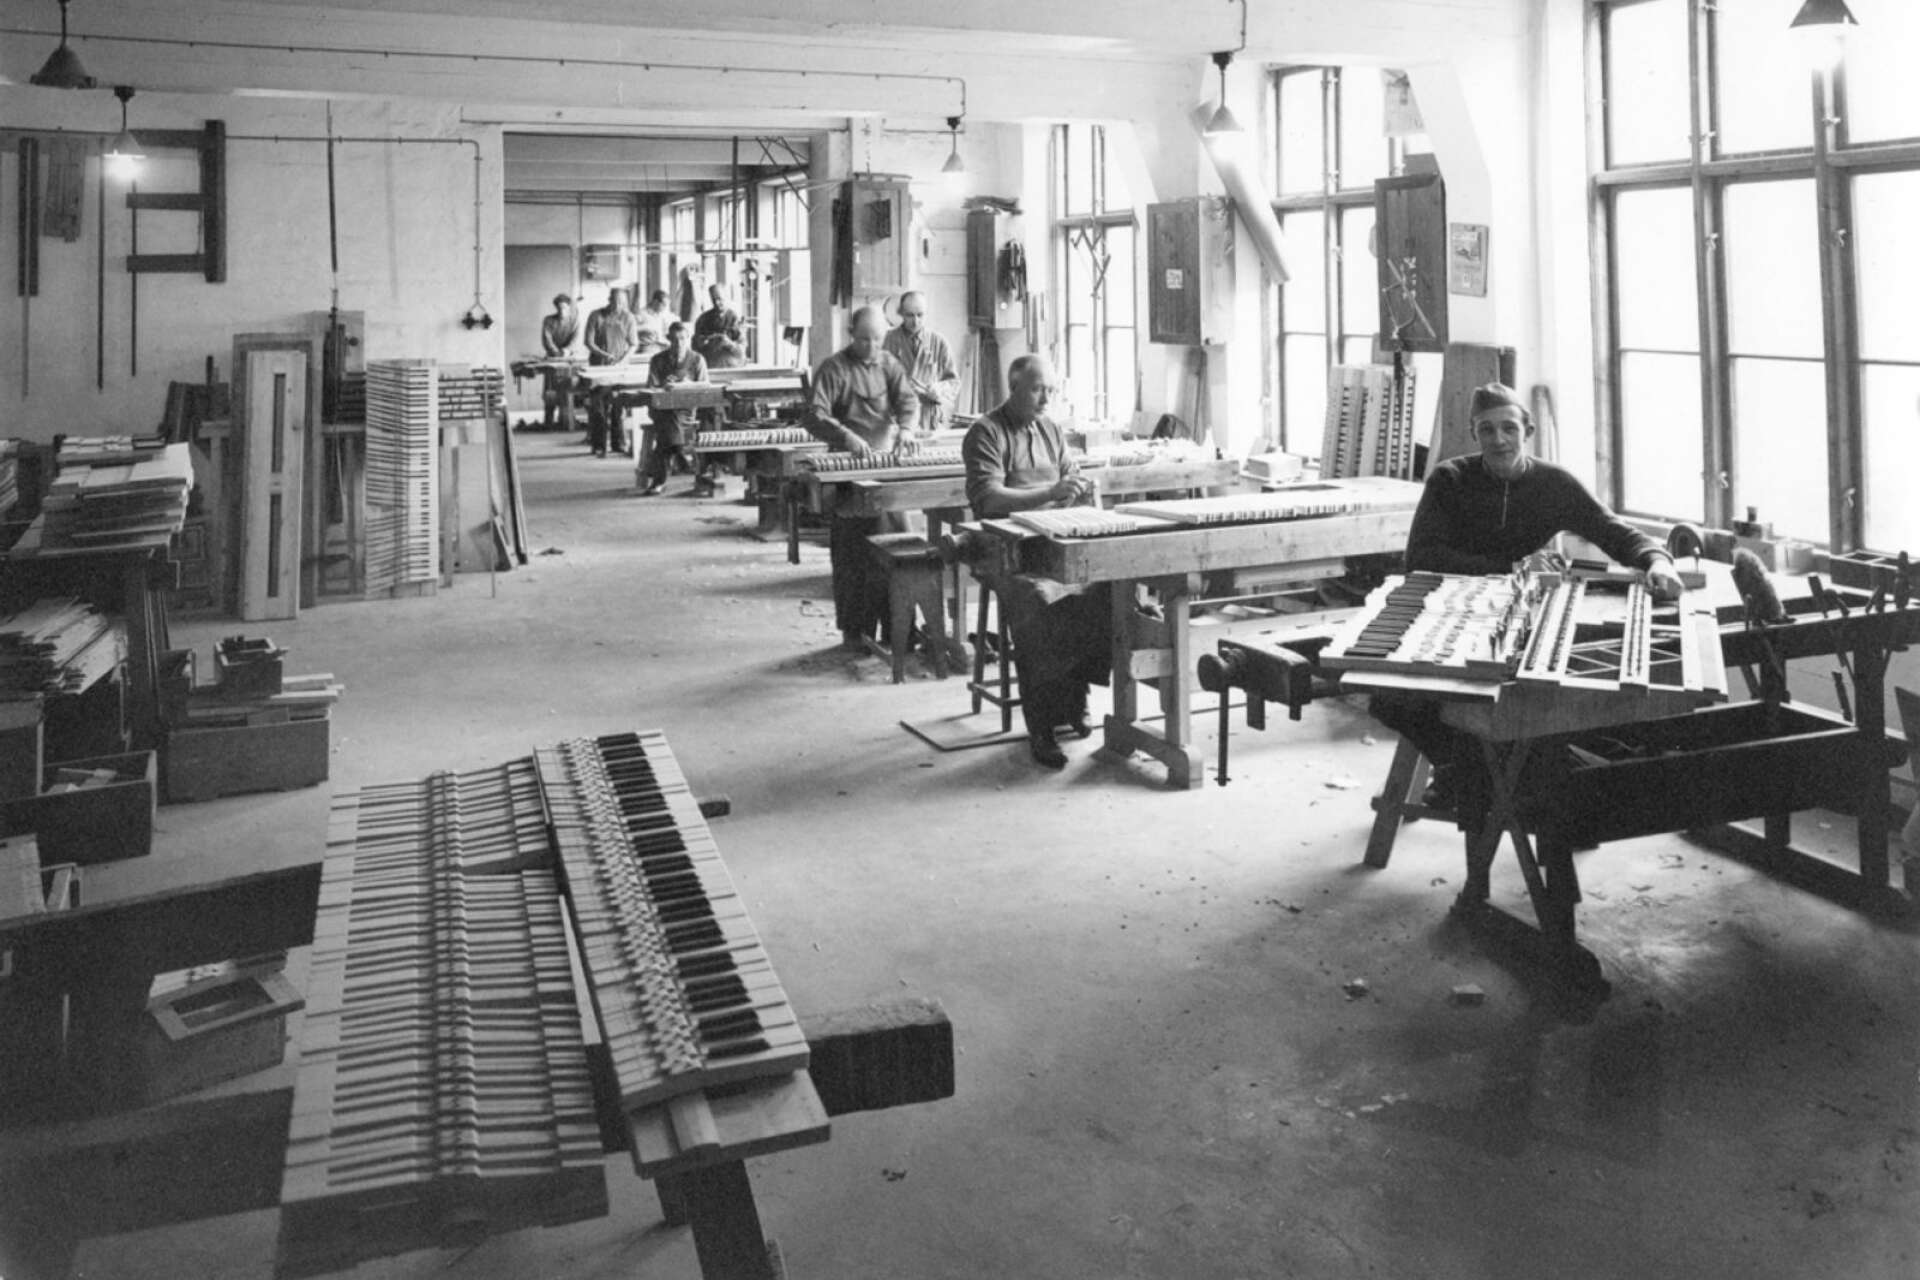 Så här såg det ut inne i fabriken där det tillverkades orglar och pianon. Okänt årtal när bilden togs.